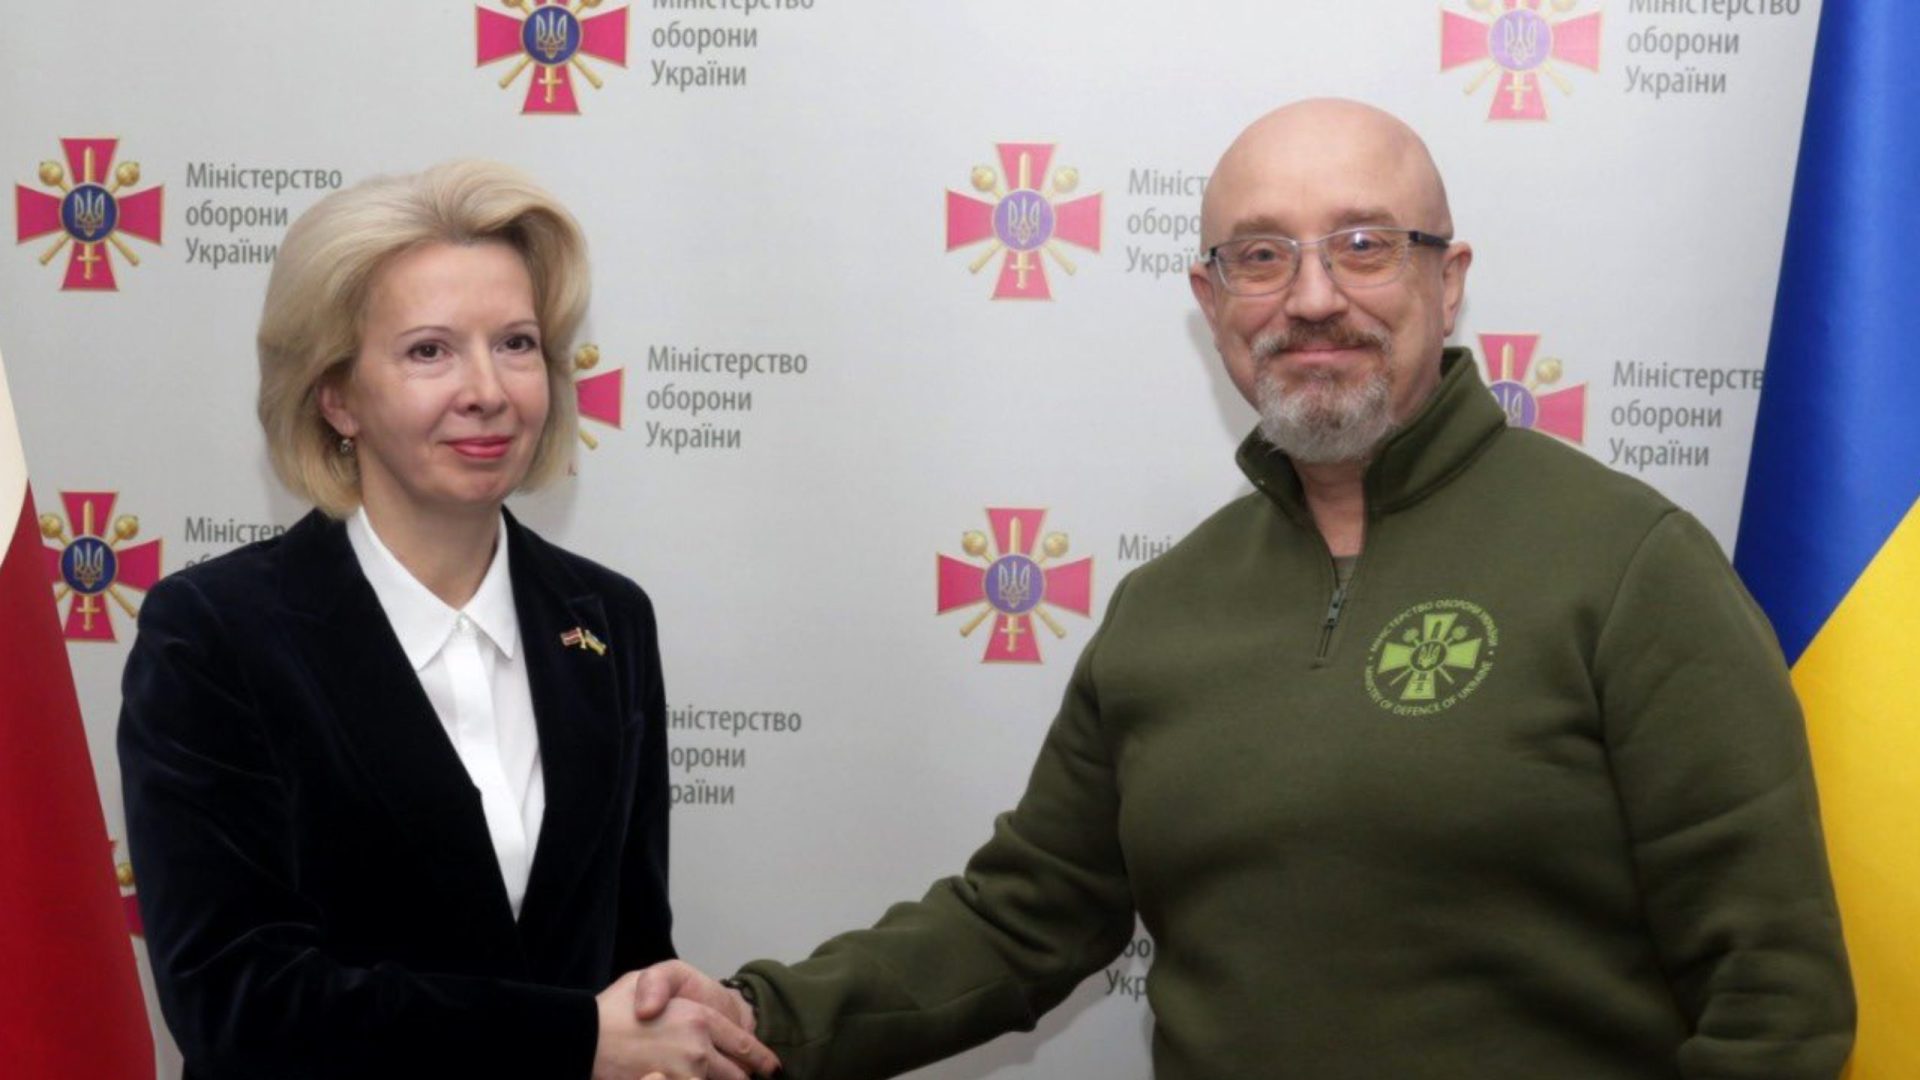 Ministro da Defesa da Ucrânia é afastado em meio a polêmicas de corrupção